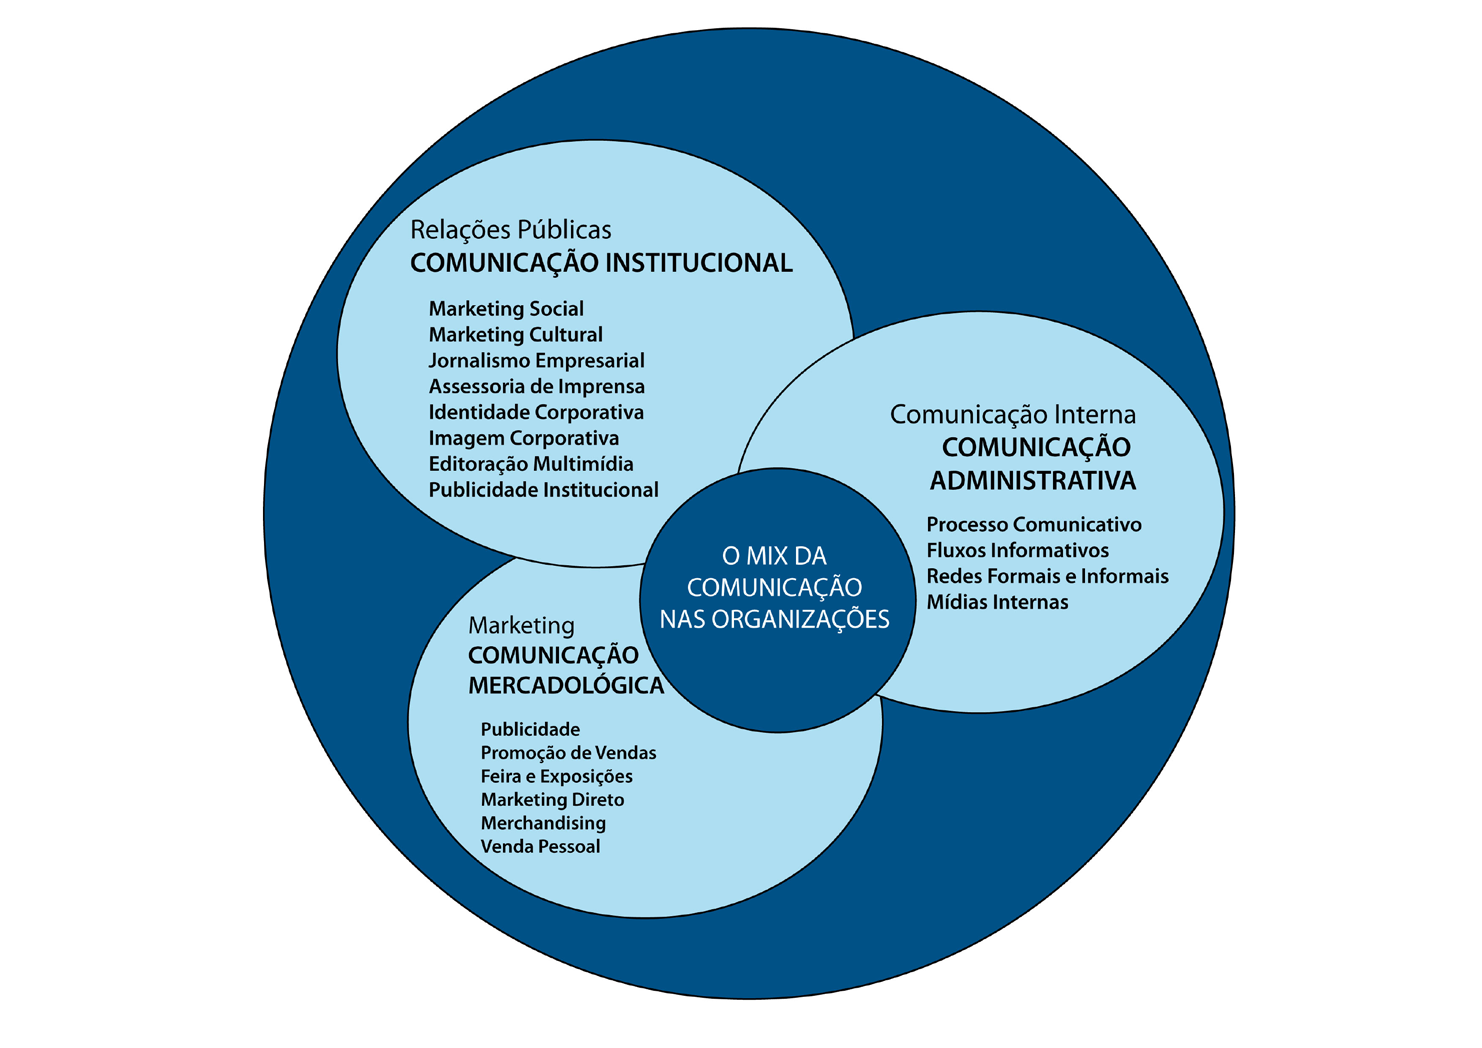 De modo geral, a comunicação organizacional nas instituições brasileiras foi sistematizada a partir de uma matriz baseada em três processos comunicacionais: o institucional, o mercadológico e o da